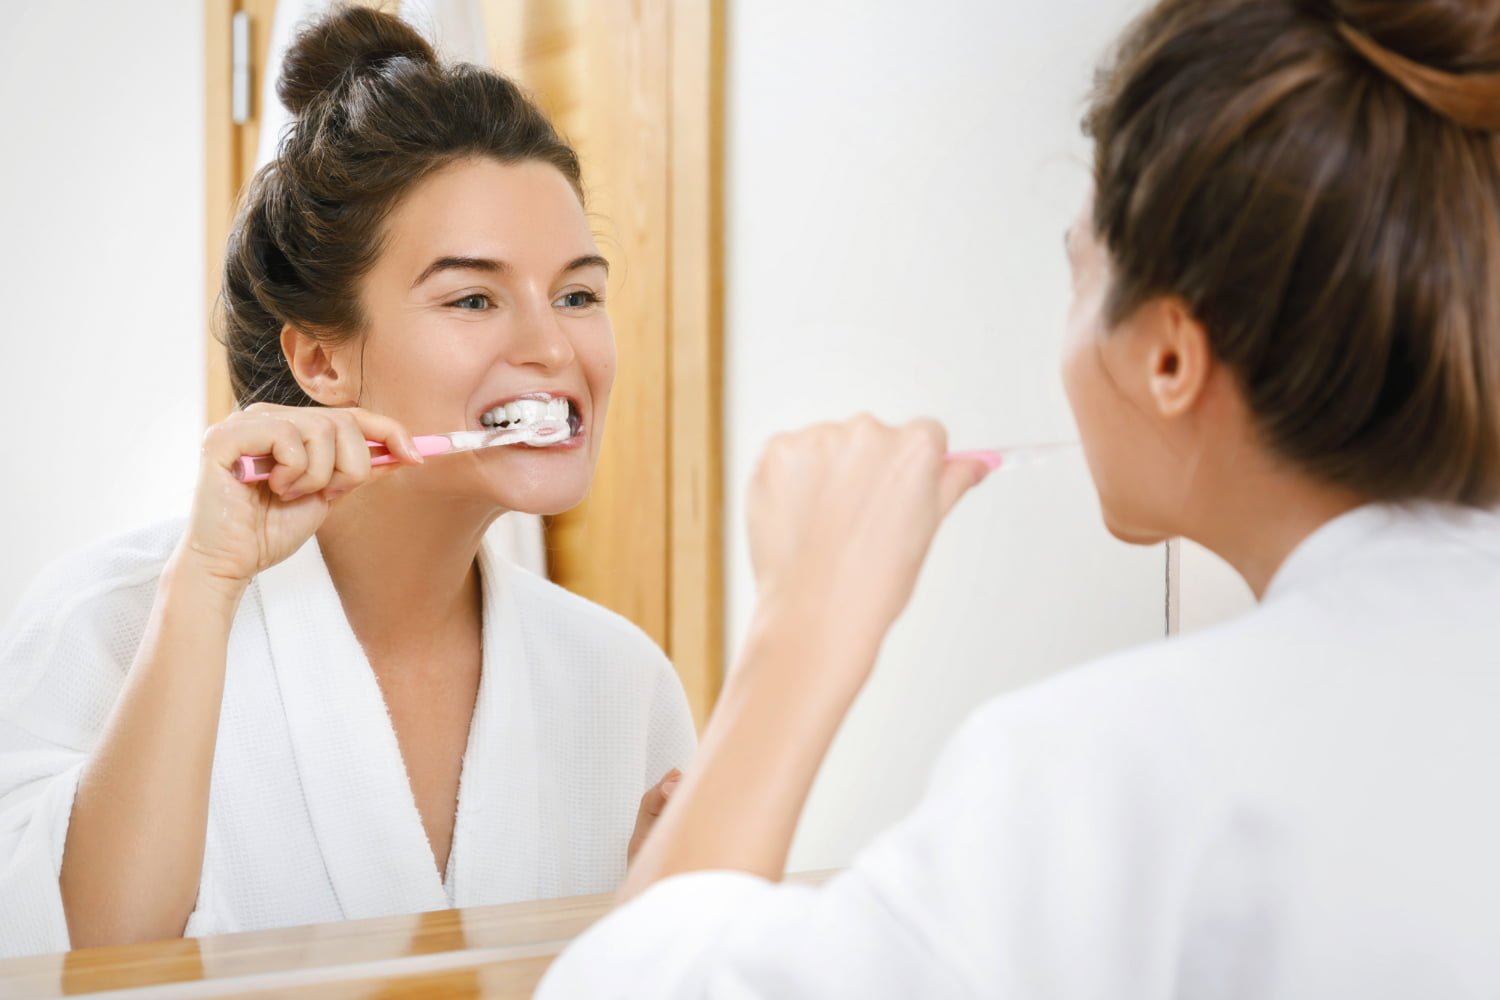 neumonía y la higiene dental / dientes amarillos / limón / bicarbonato de sodio / cepillar los dientes - cepillarse los dientes